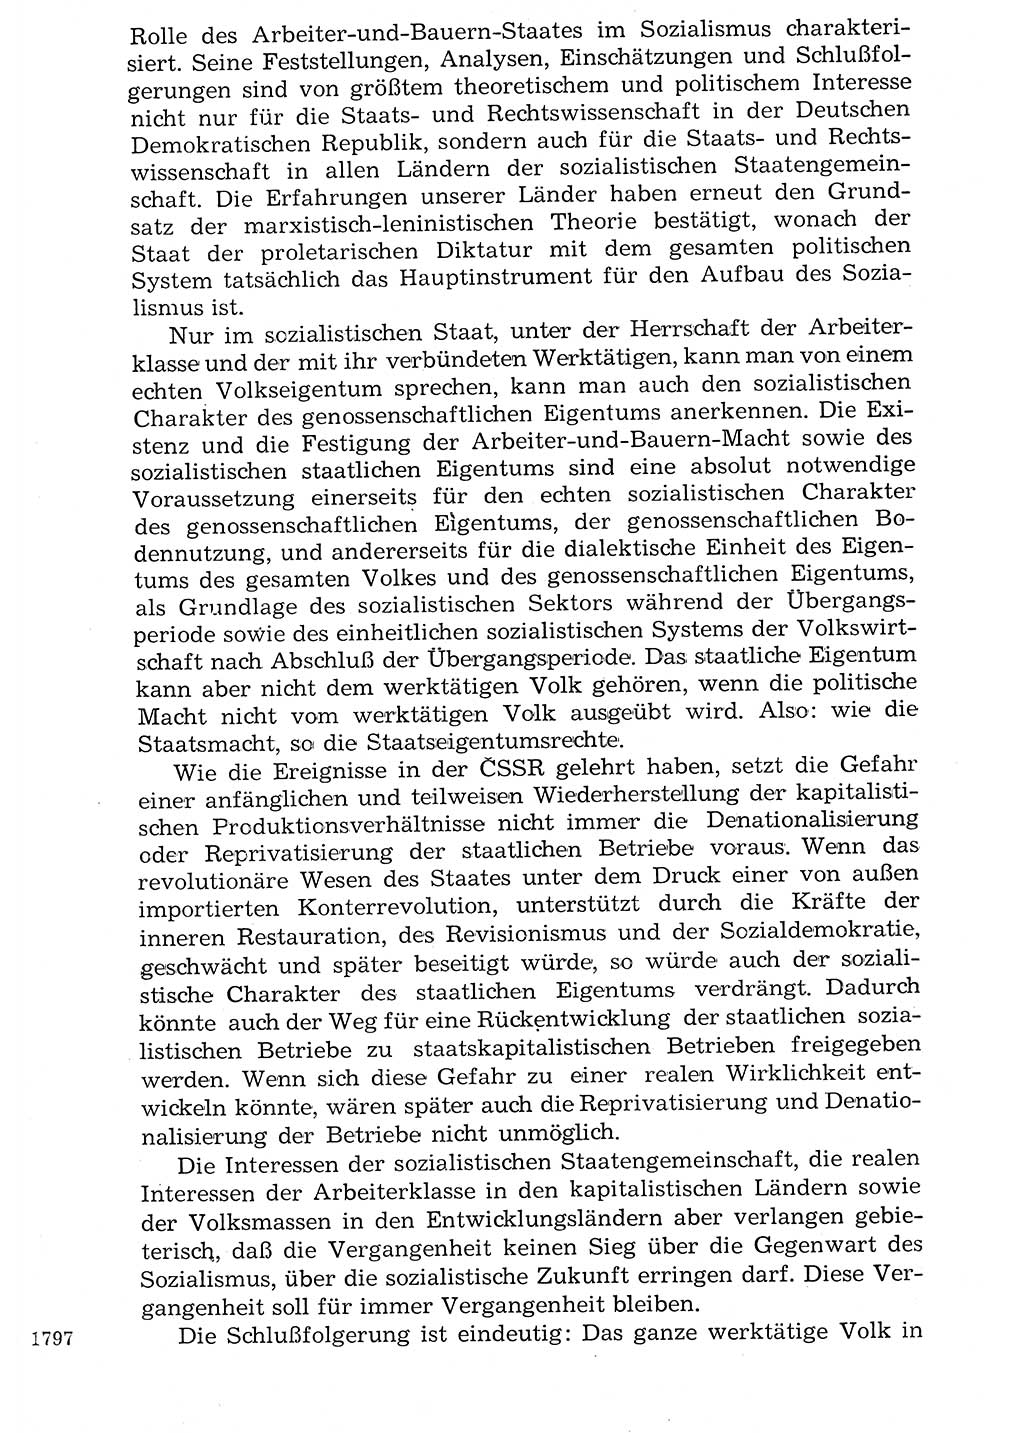 Staat und Recht (StuR), 17. Jahrgang [Deutsche Demokratische Republik (DDR)] 1968, Seite 1797 (StuR DDR 1968, S. 1797)